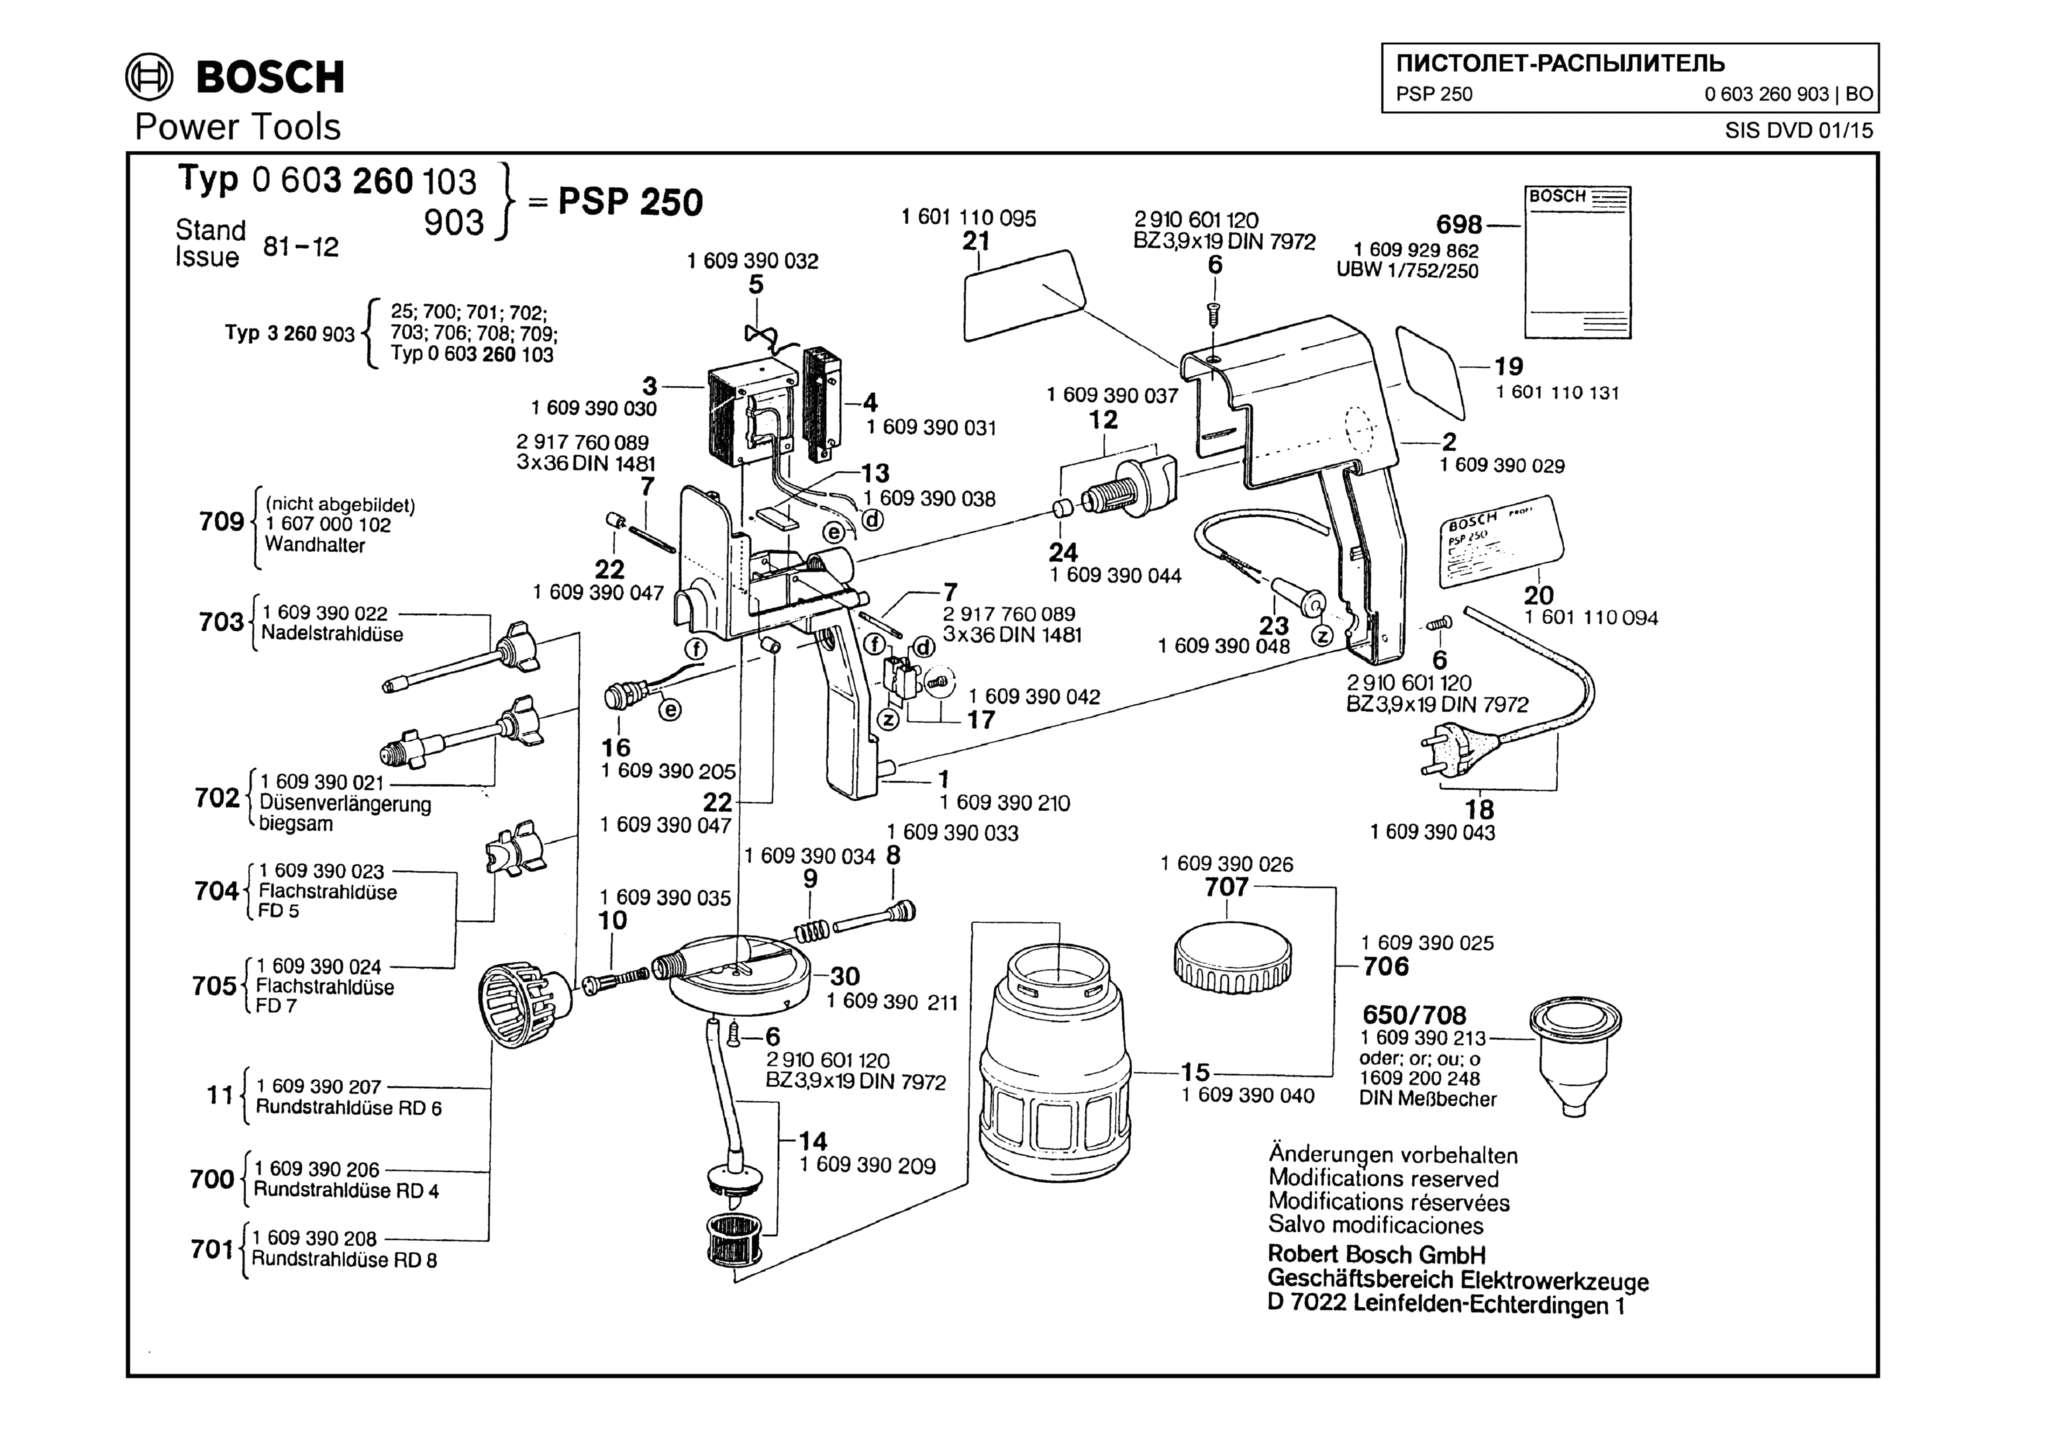 Запчасти, схема и деталировка Bosch PSP 250 (ТИП 0603260903)